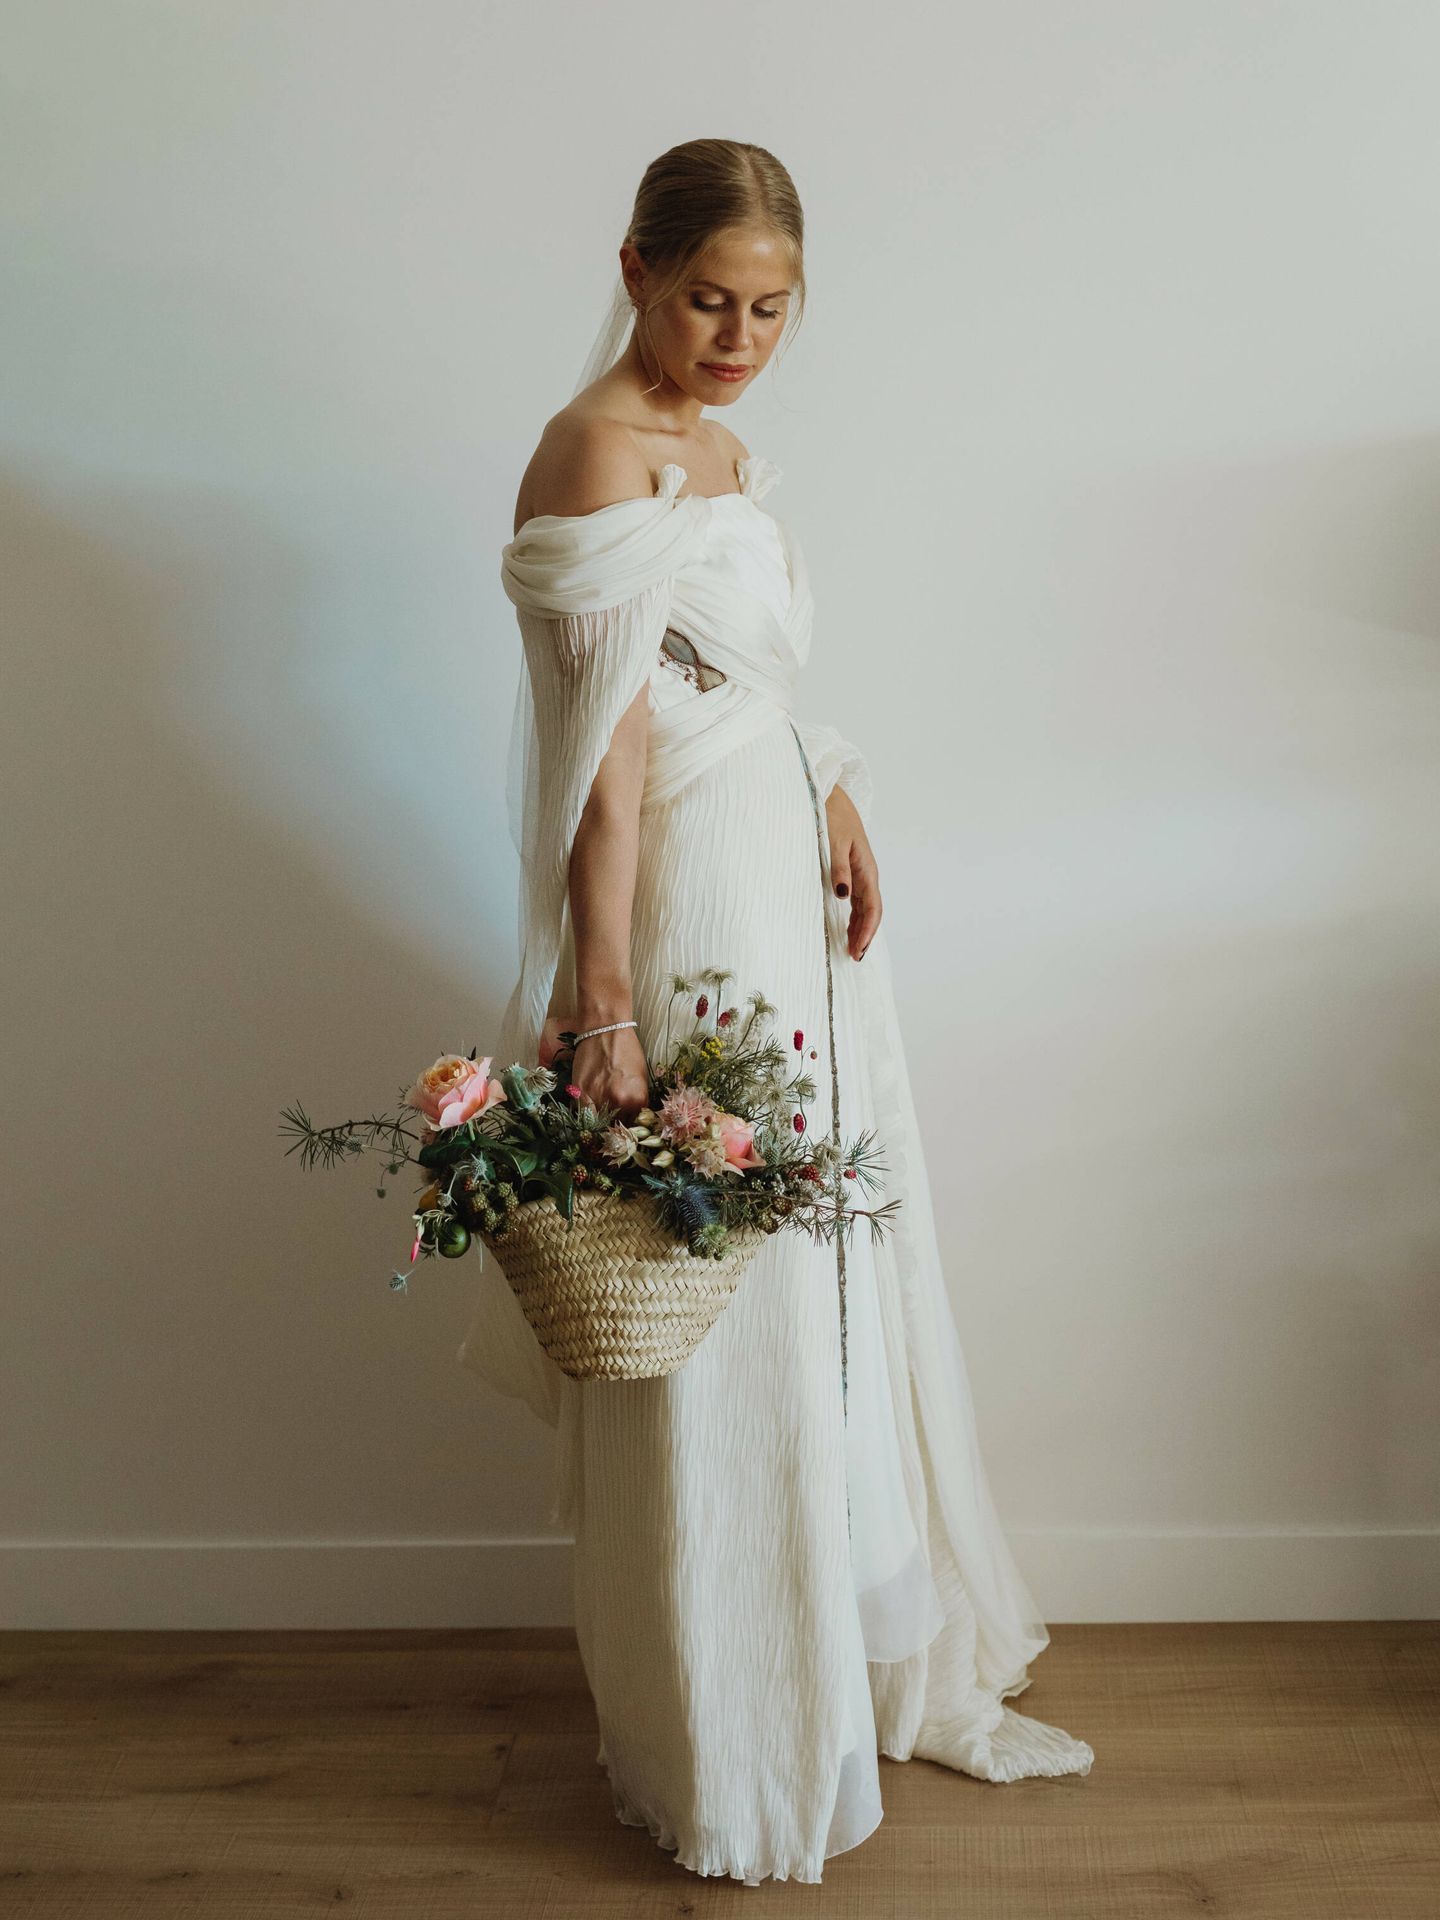 El vestido de novia de Ale creado por Sole Alonso. (Cupida Studio)